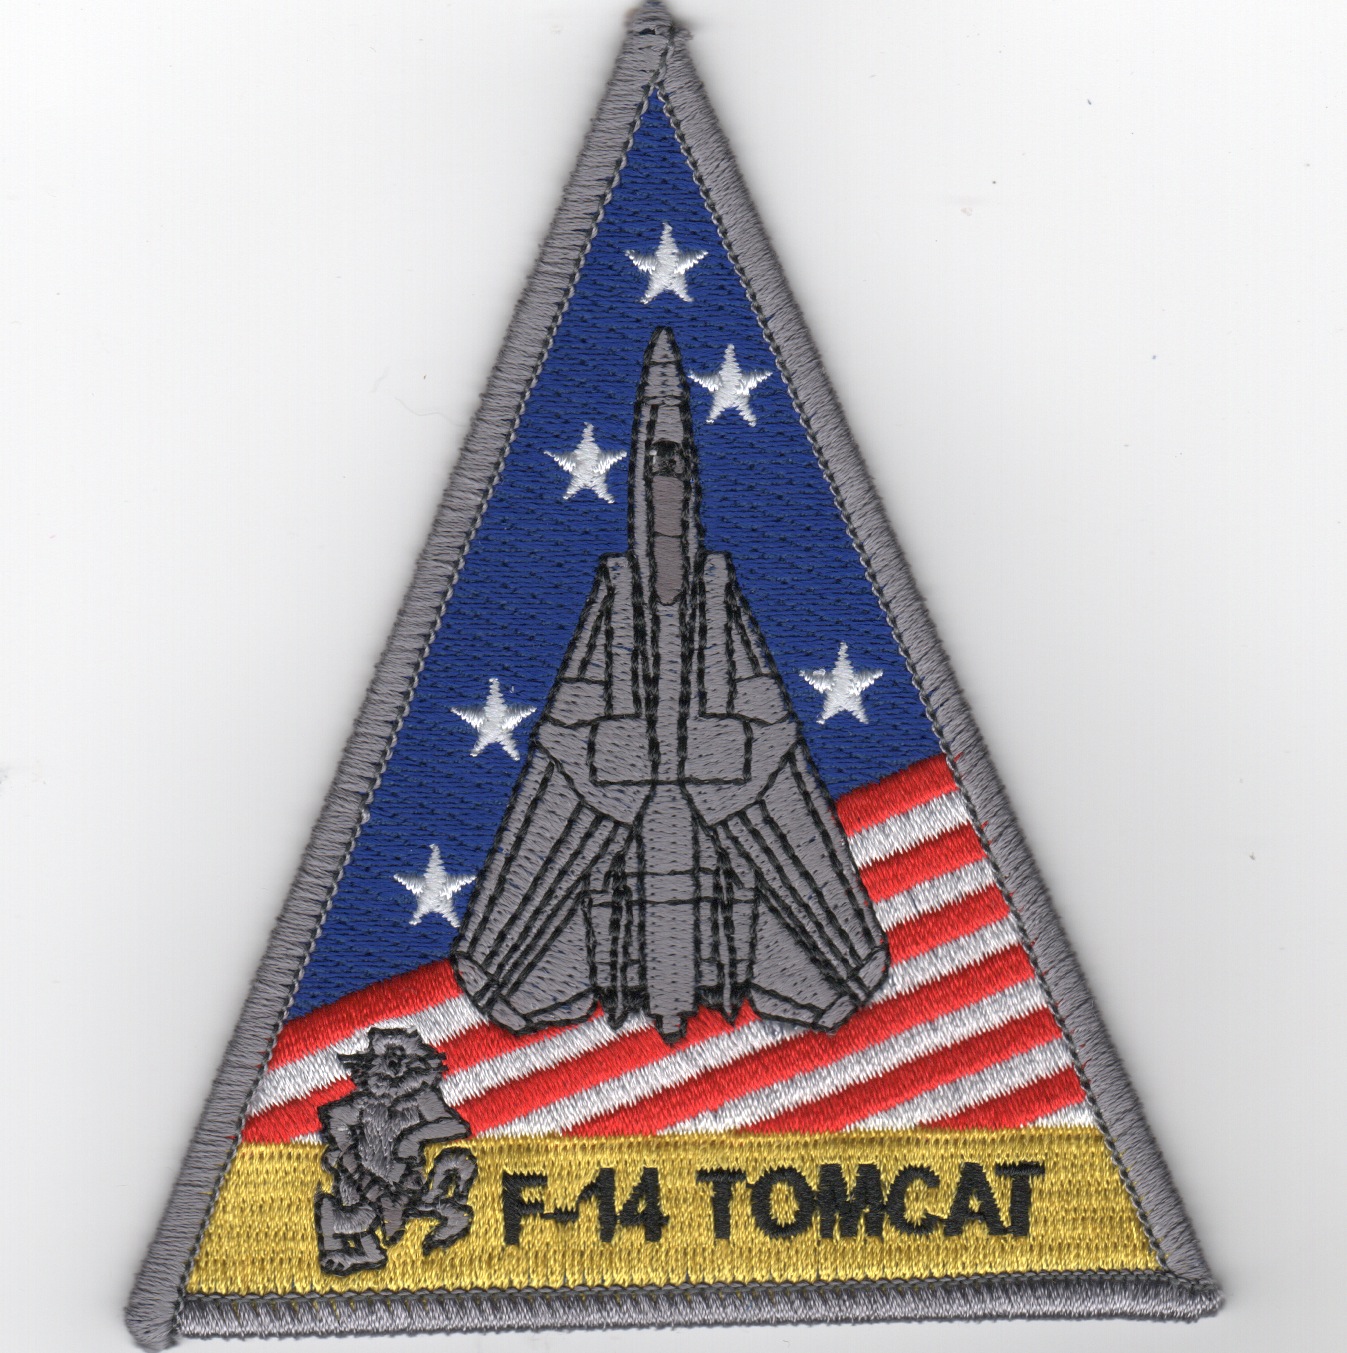 VF-101 'Tomcat' Triangle Patch (R/W/B)